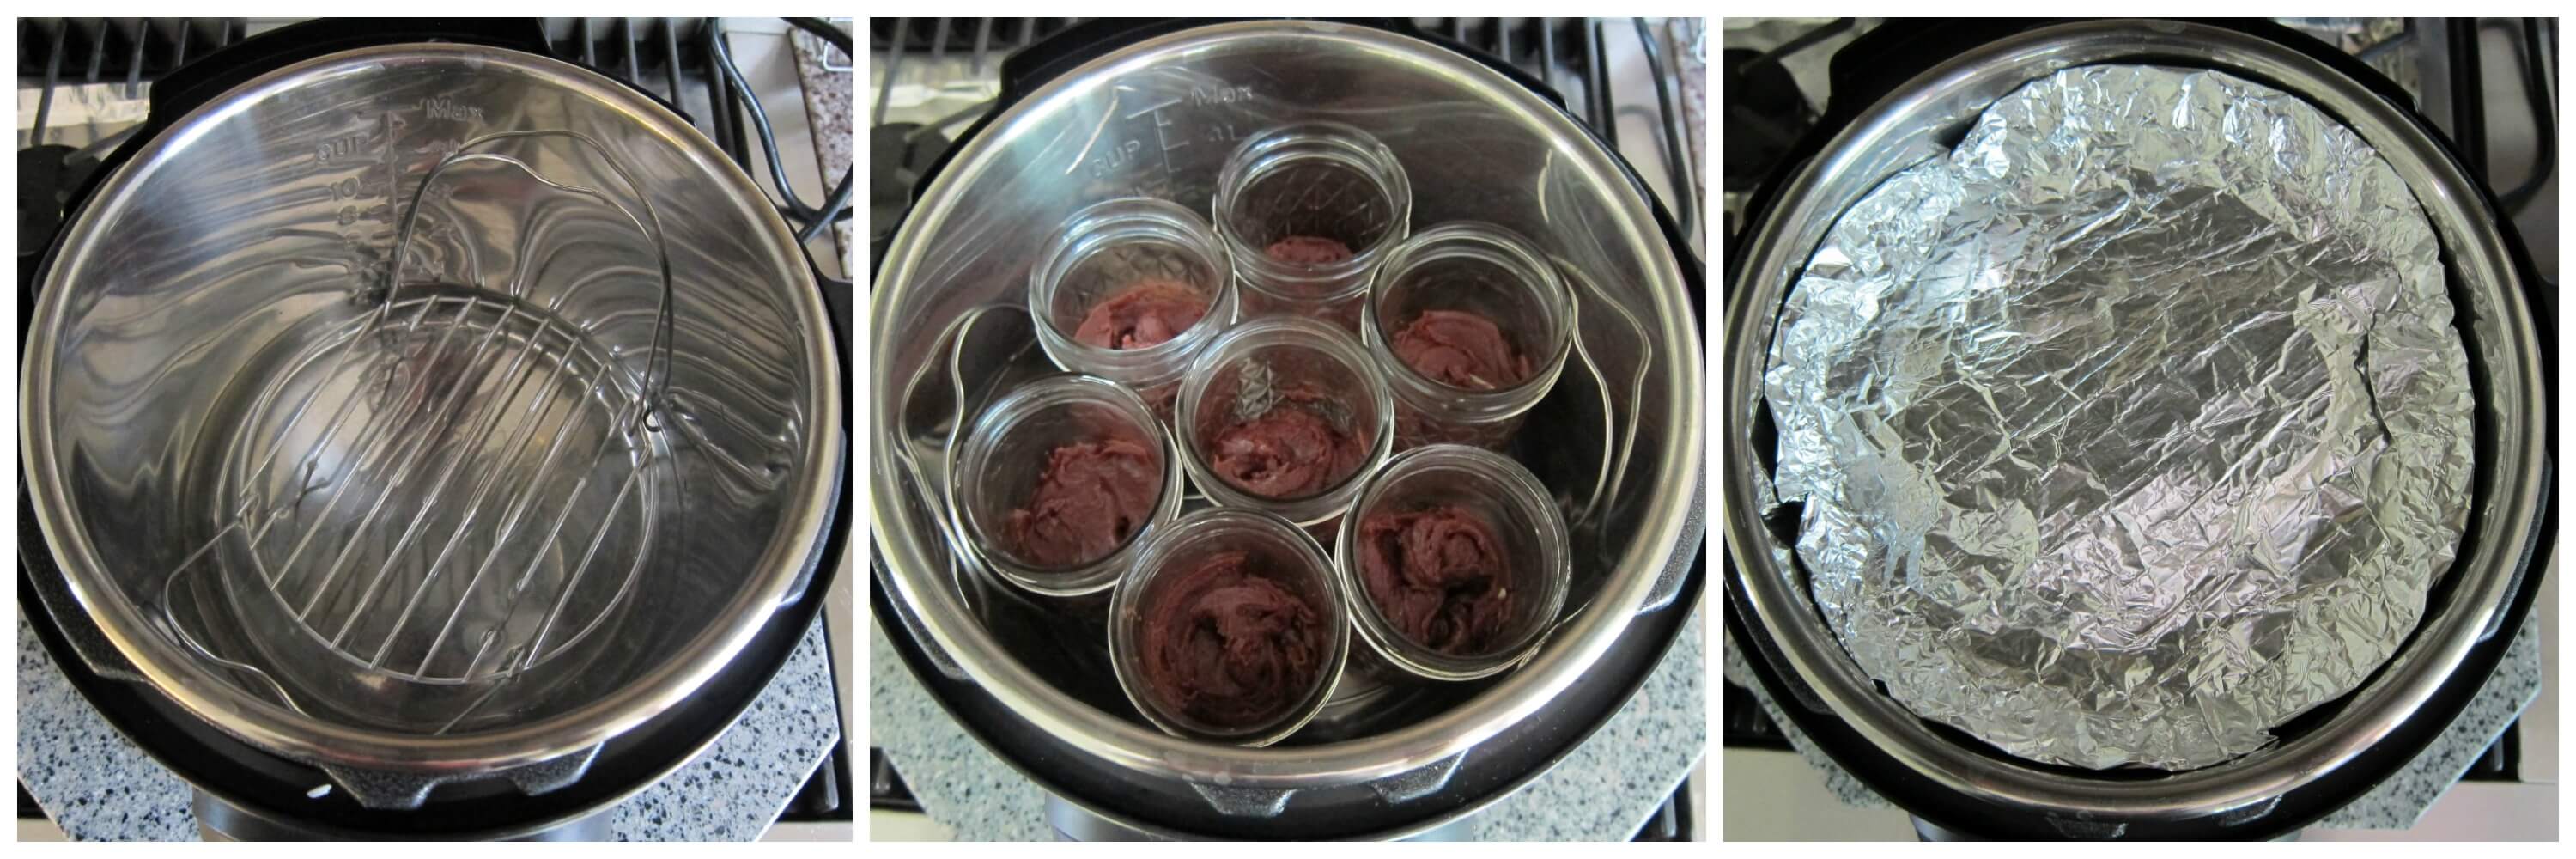 Instant Pot Brownies a la Mode Instruction collage - trivet in instant pot, jars on trivet, foil covering all